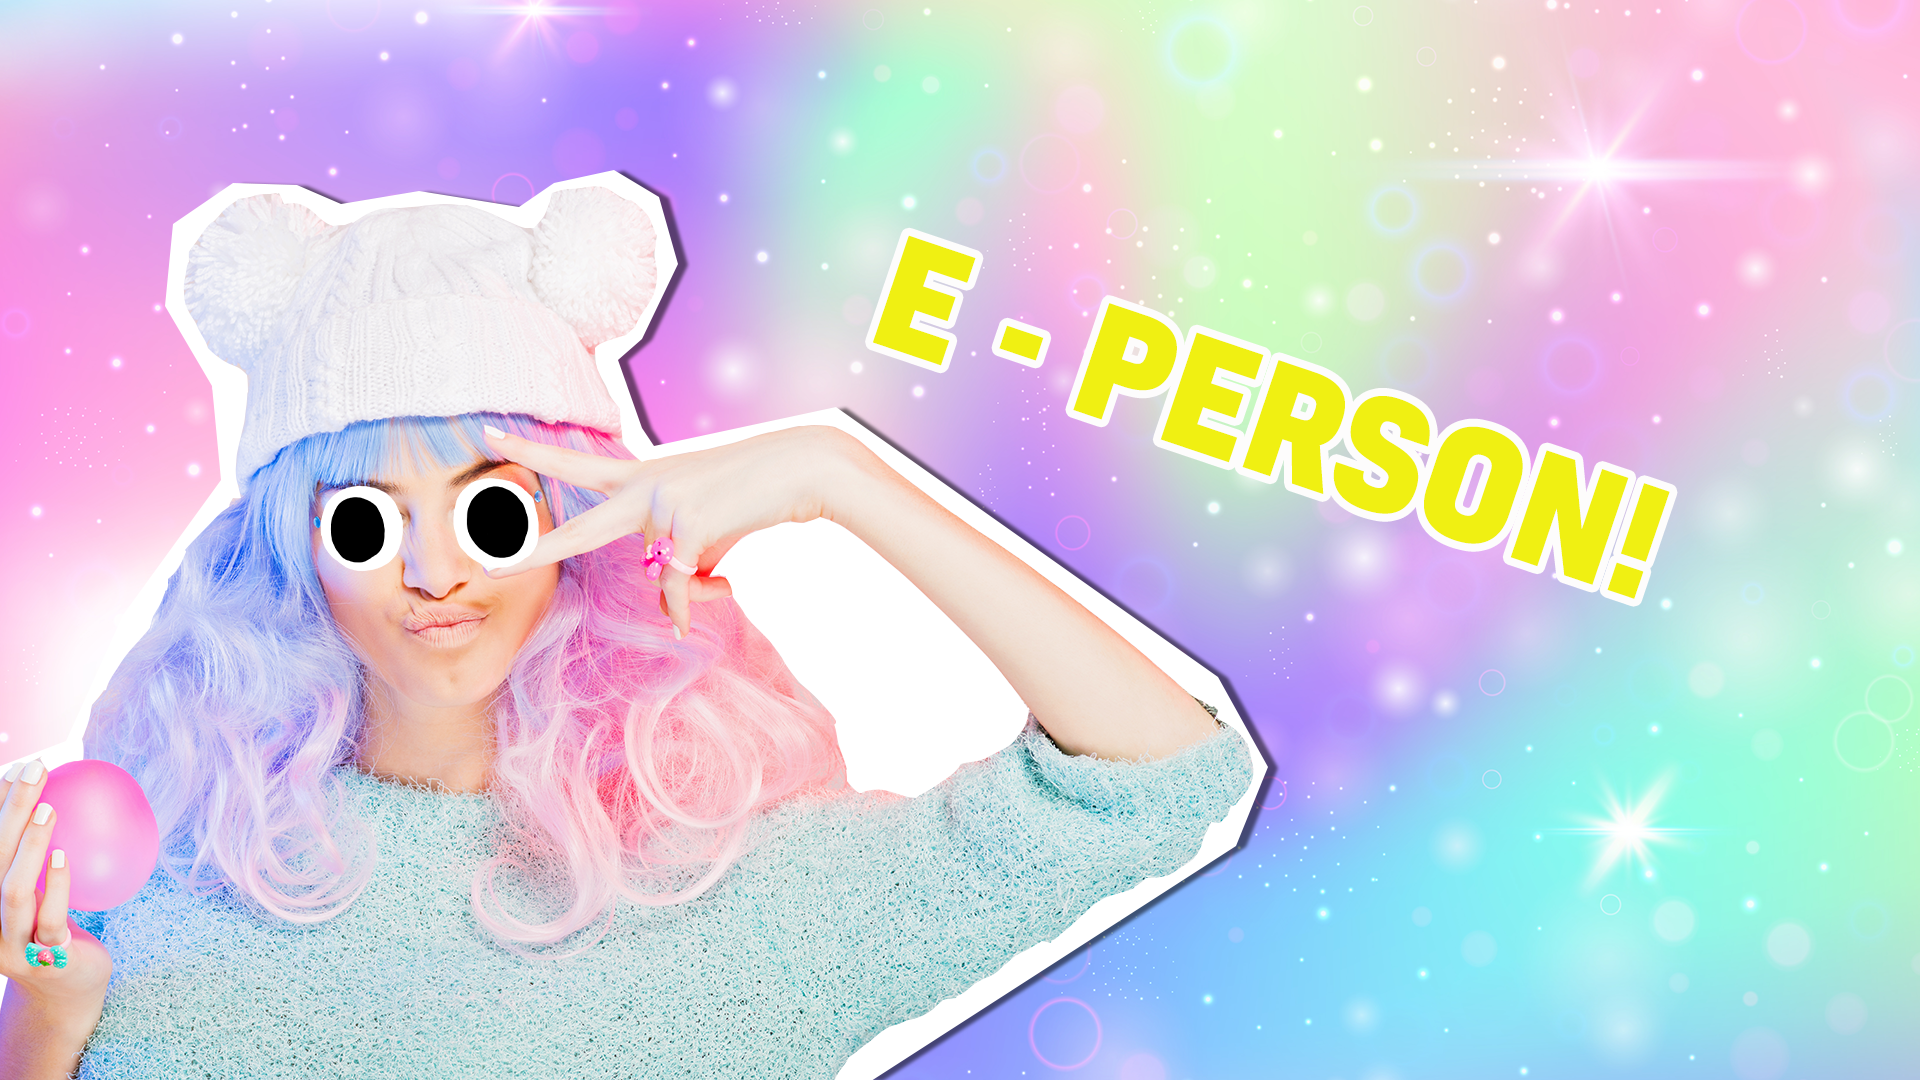 E-Person 